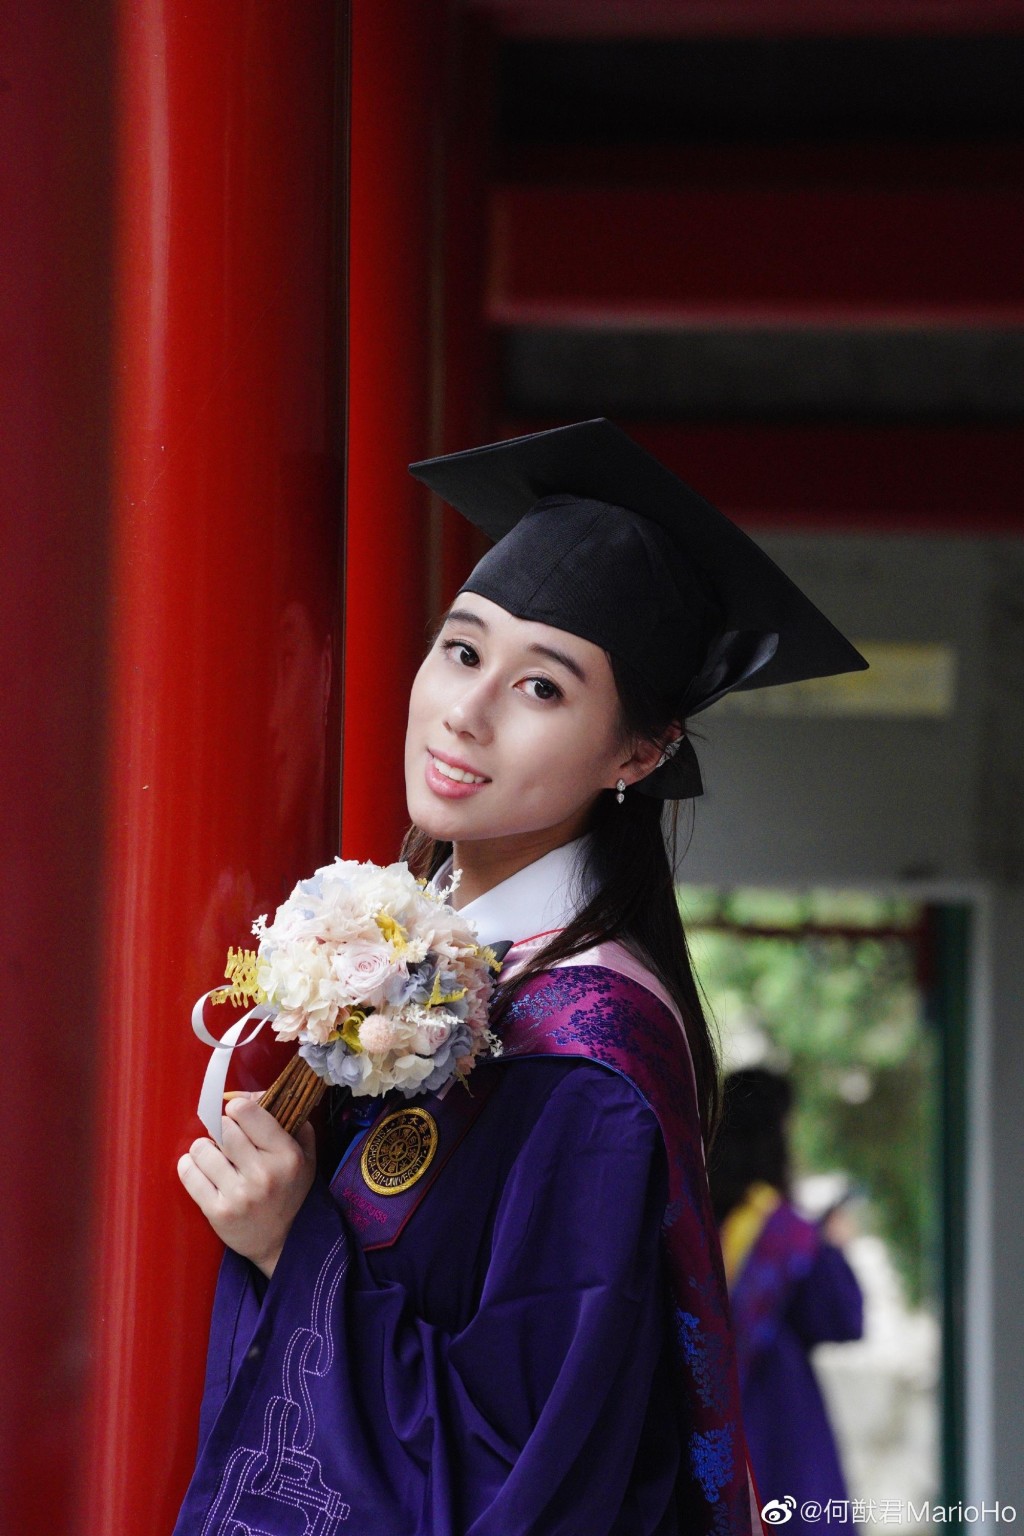 何超欣從美國麻省理工學院獲得雙學位後，返回北京清華進修碩士課程，主修中國公共政策。